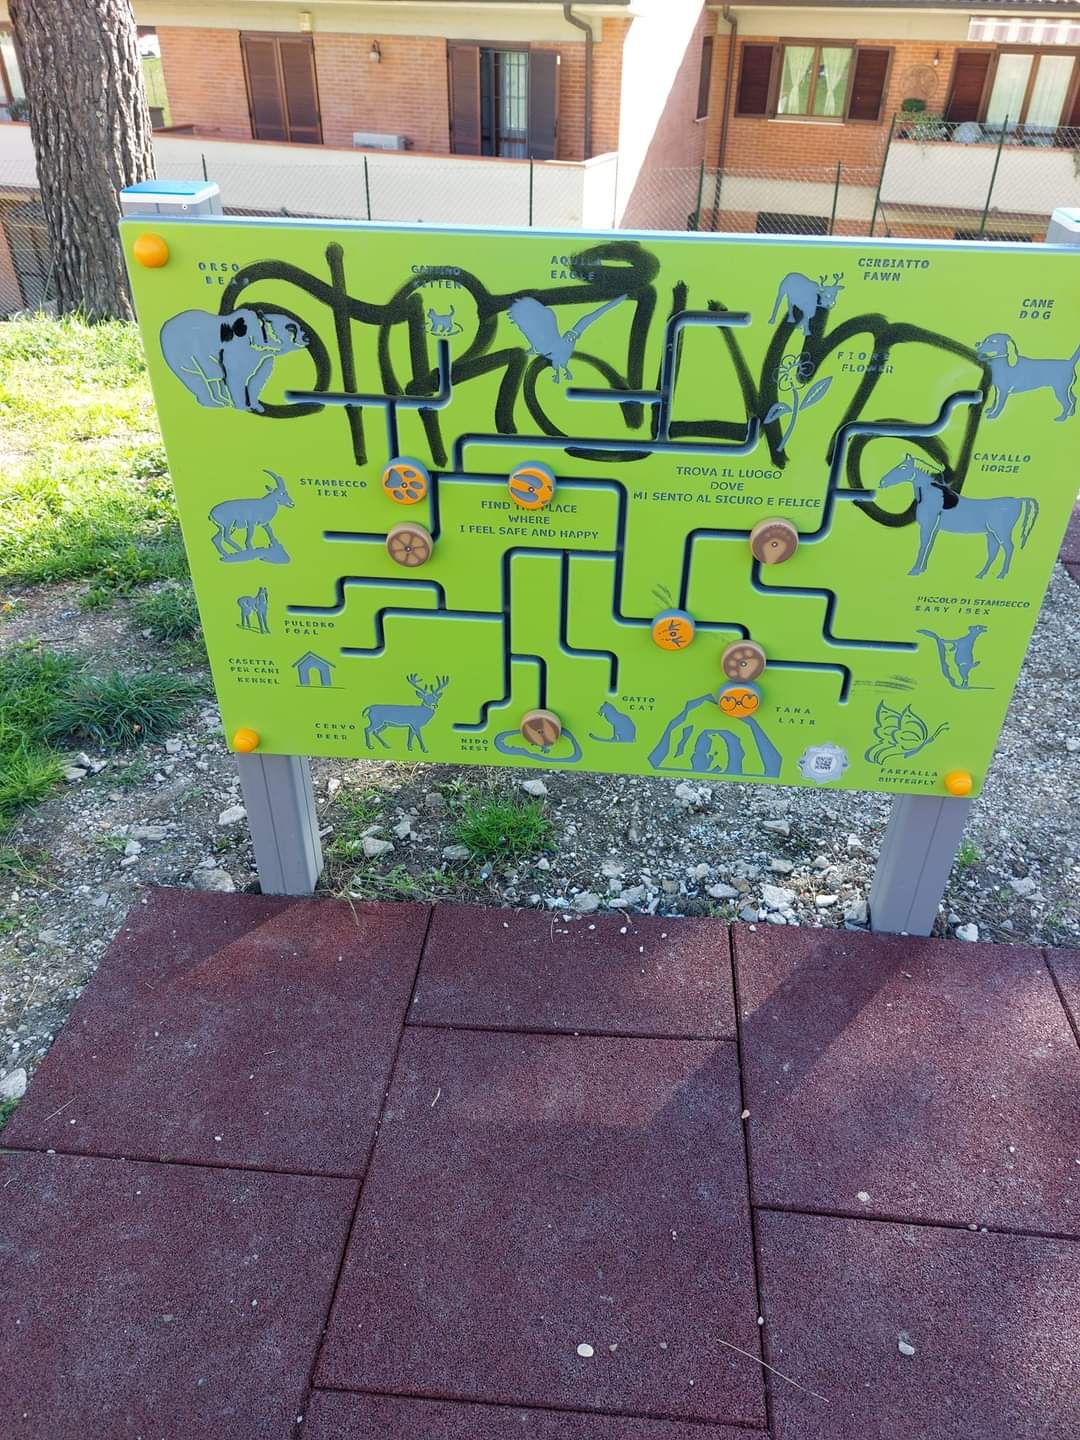 immagine atti vandalici giardini pubblici Strada_2